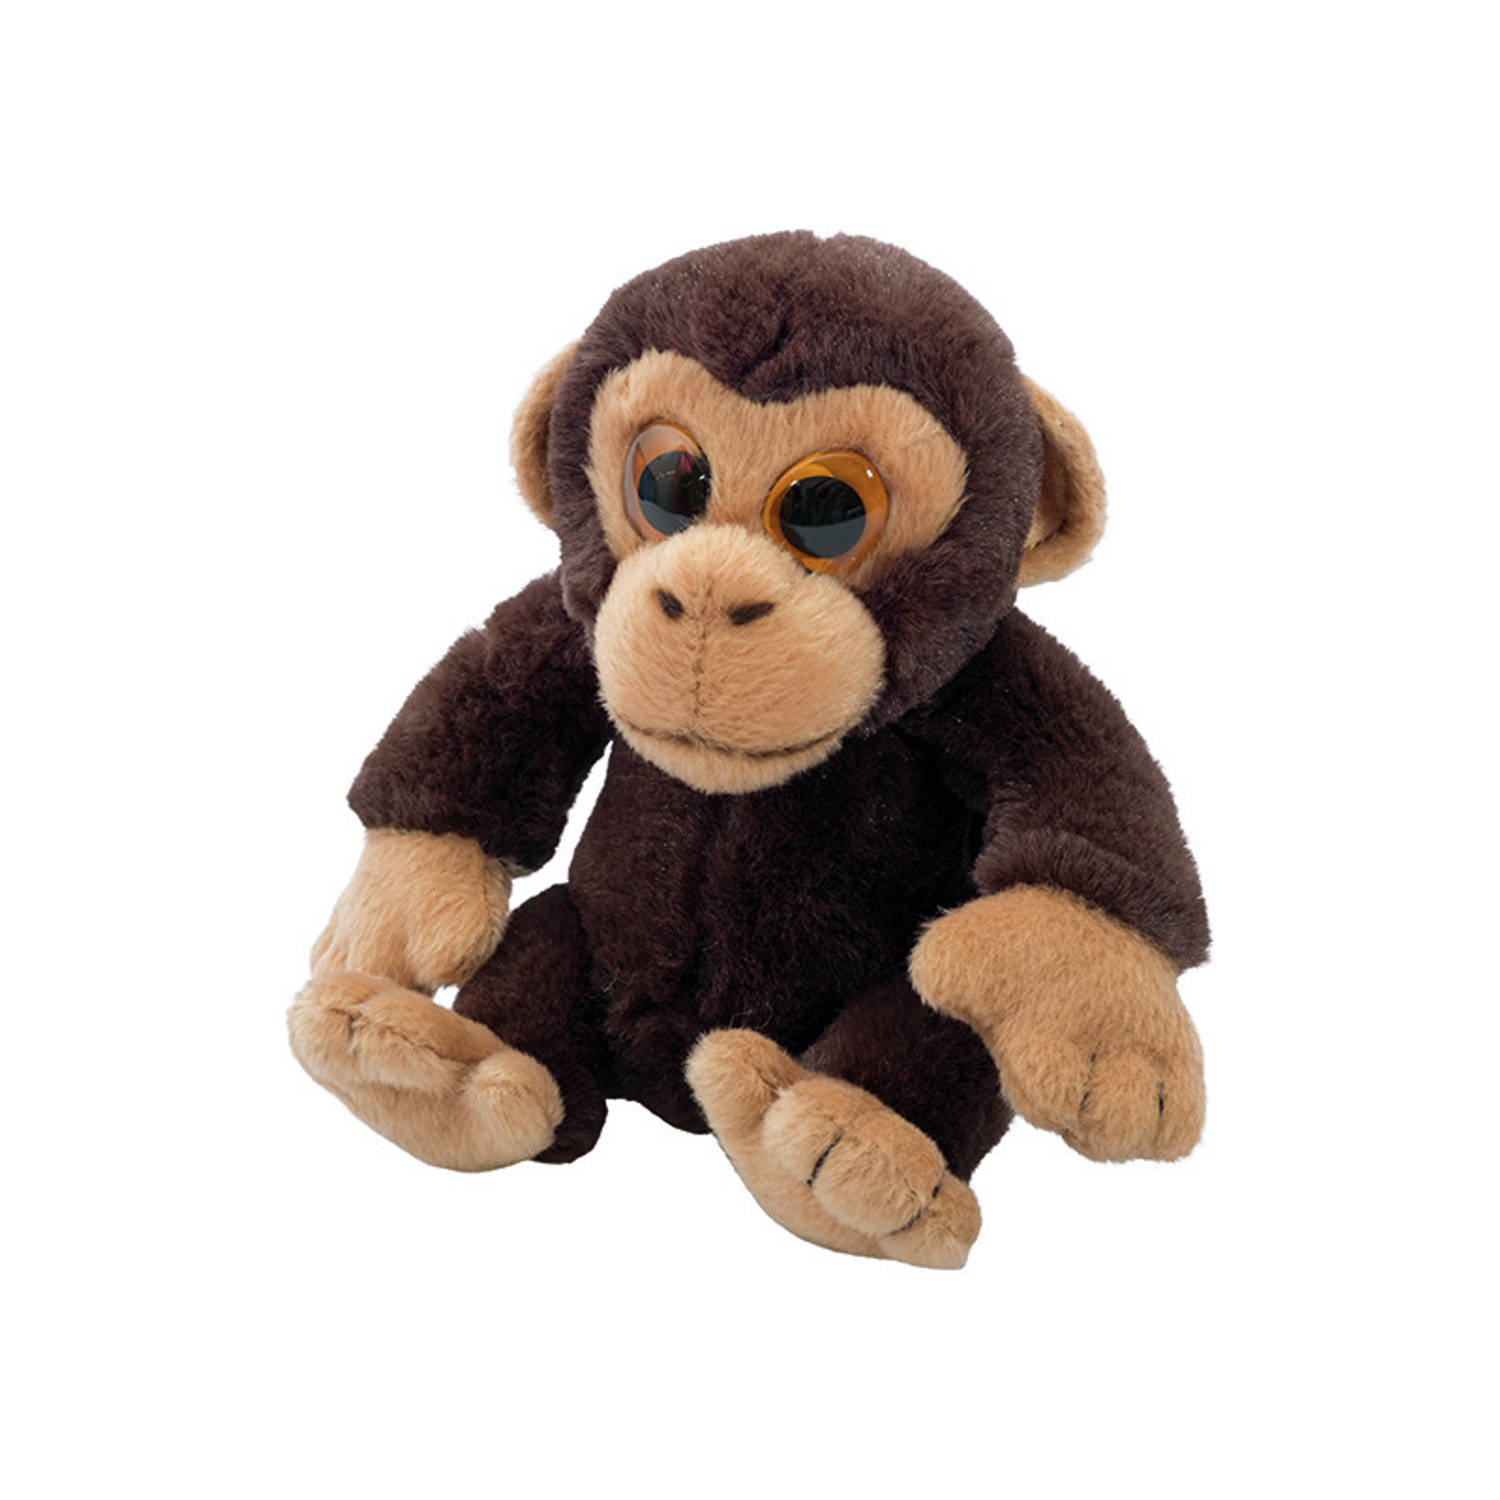 Pluche Chimpansee aap knuffeldier van 13 cm - Speelgoed dieren knuffels cadeau voor kinderen